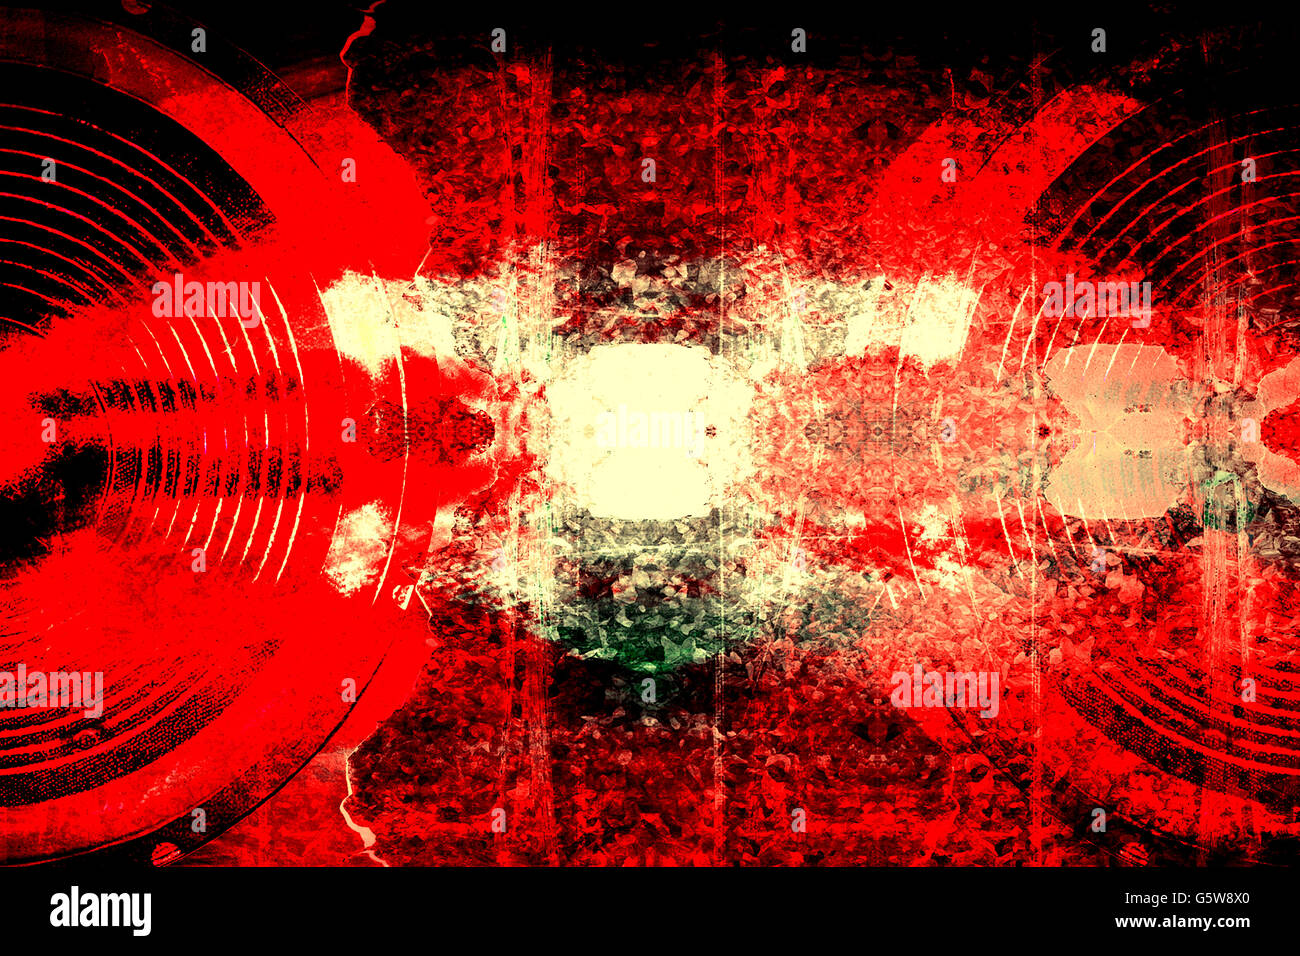 Les haut-parleurs audio grunge rouge sur un mur fissuré Banque D'Images